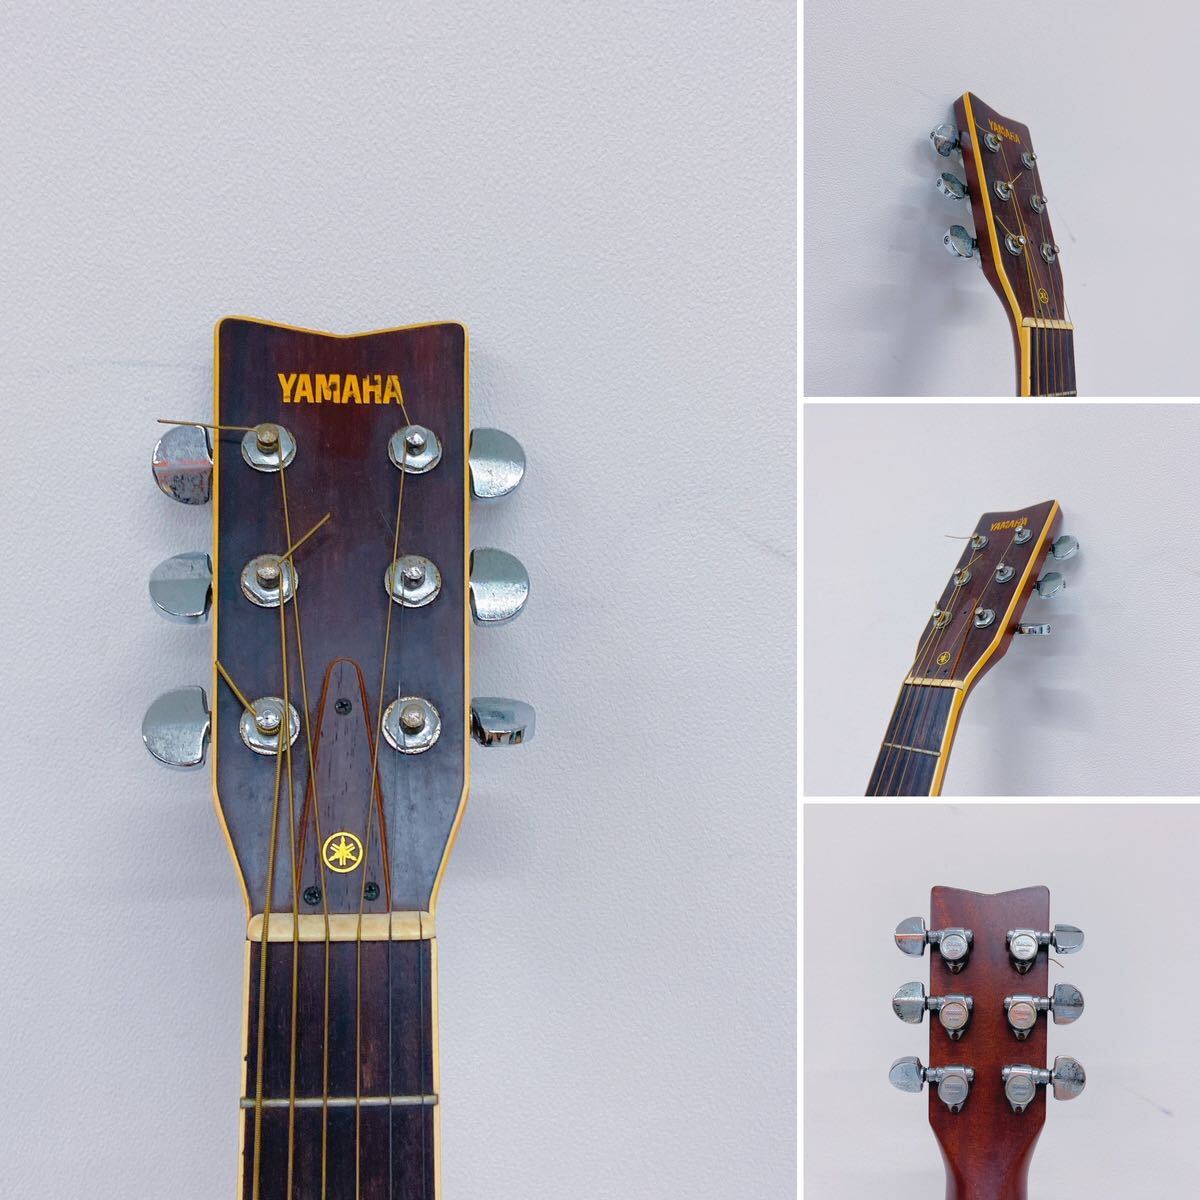 4A126 YAMAHA ヤマハ アコースティックギター FG-351 弦楽器 弦長65ナット幅4.5(全て約cm)素人採寸 ケース付の画像6